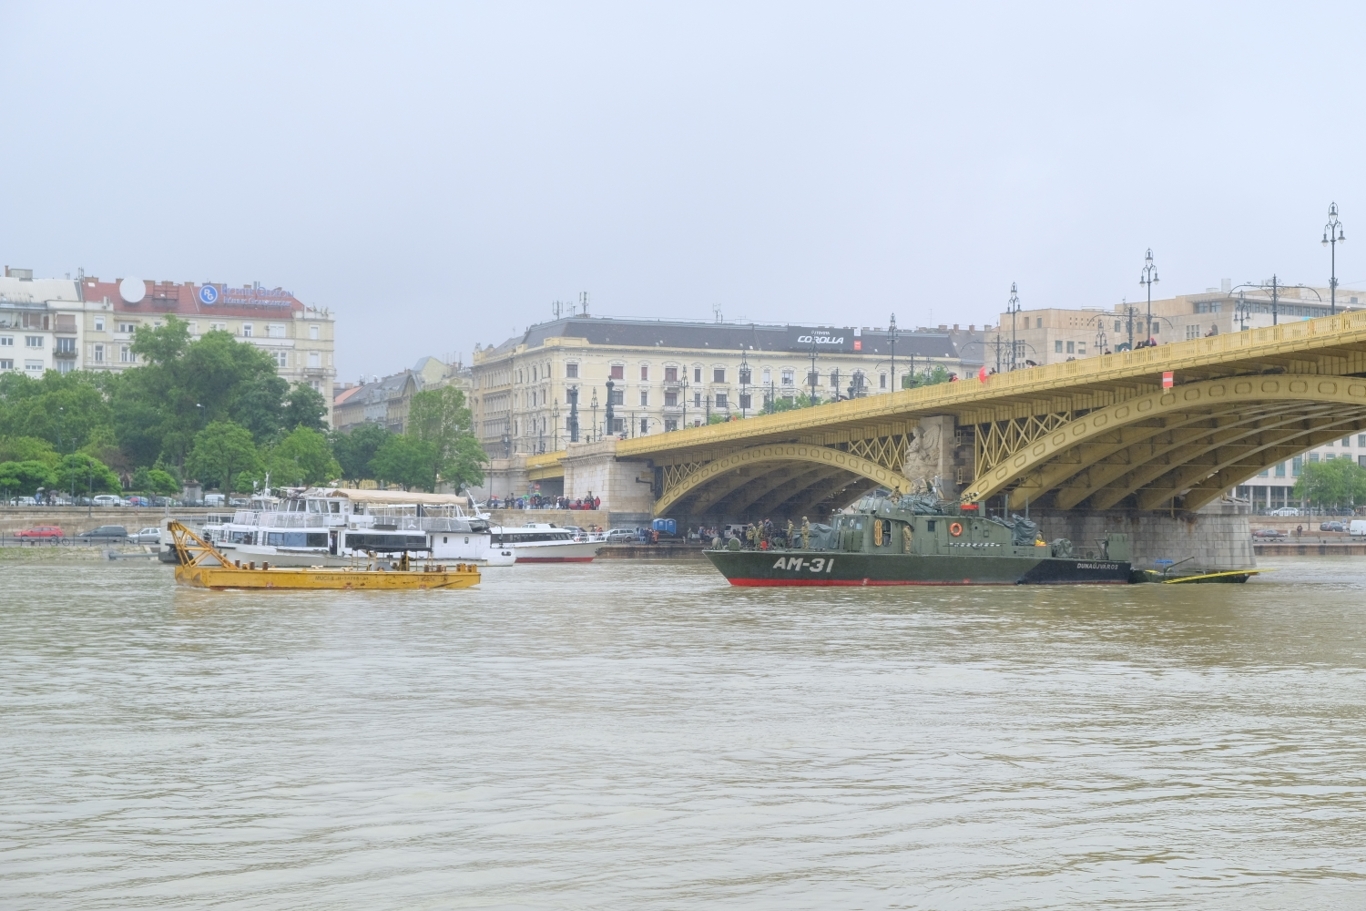 A Magyar Honvédség 1. Honvéd Tűzszerész és Hadihajós Ezred AM-31 Dunaújváros hajója is részt vesz az elsüllyedt turistahajó állapotának vizsgálatában a Margit hídnál. A képre kattintva Vörös Attila fotóiból készült galéria nyílik